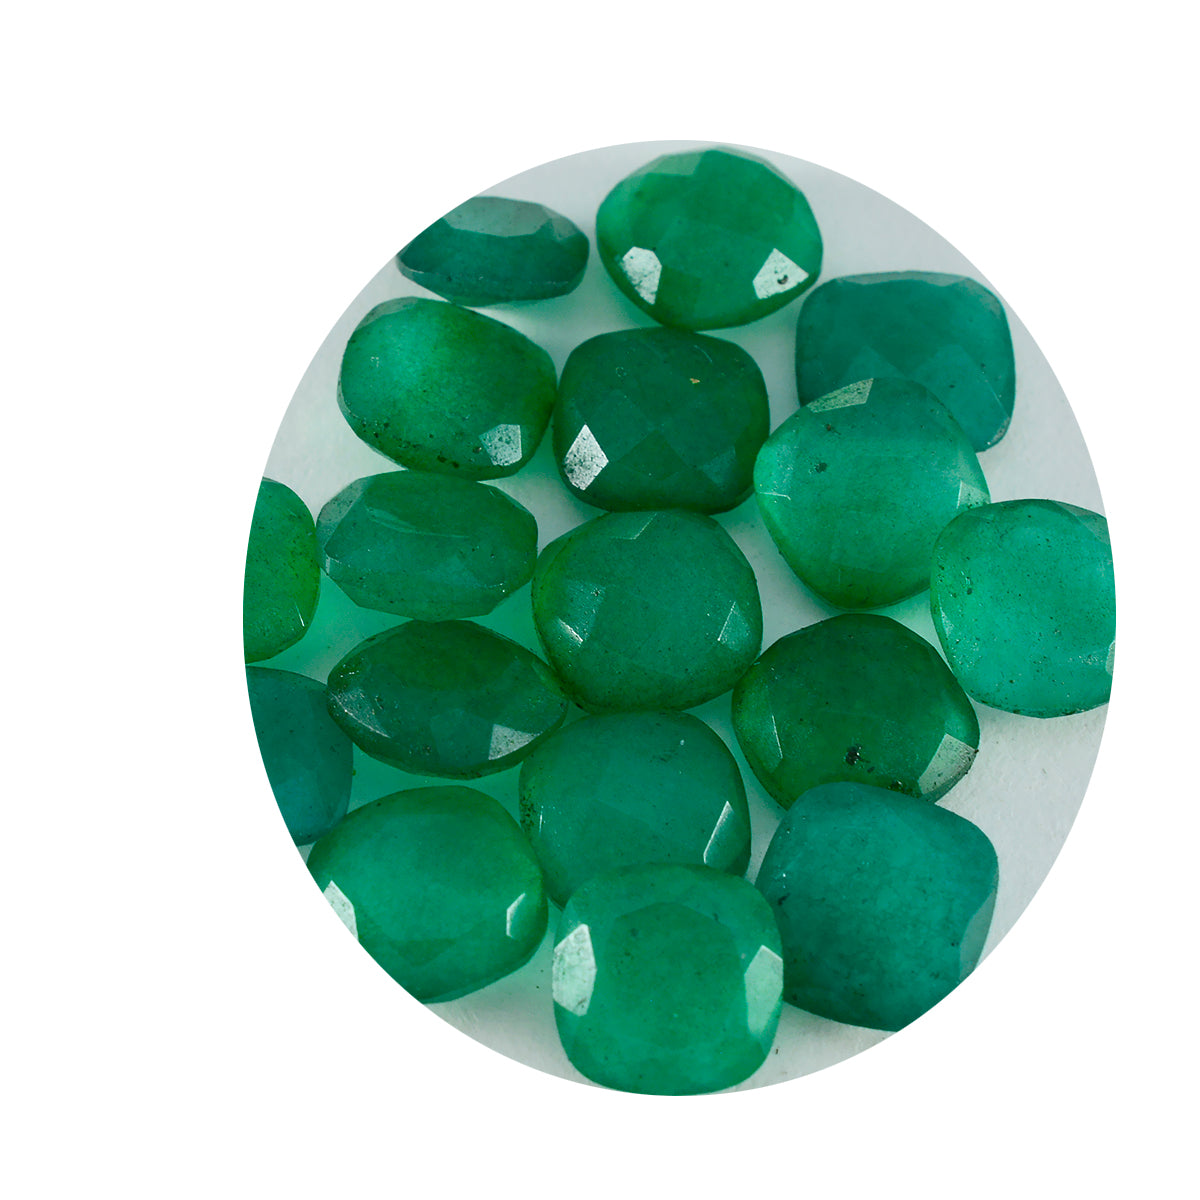 riyogems 1 шт. натуральная зеленая яшма граненая 5x5 мм в форме подушки хорошее качество свободный камень